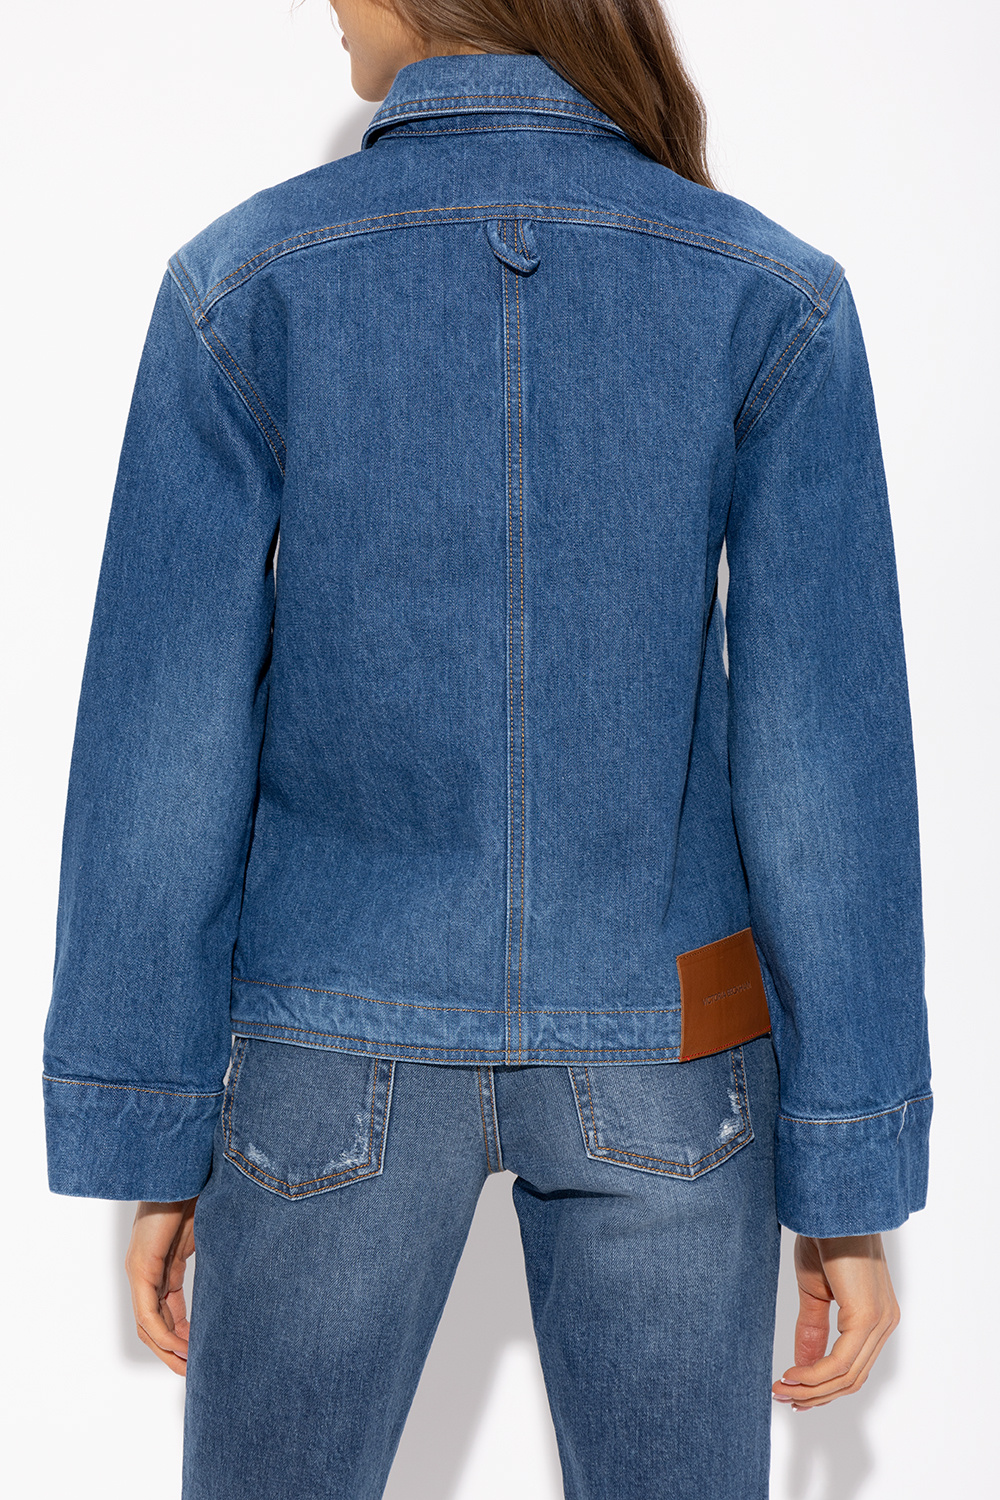 Victoria Beckham Denim Essentials jacket